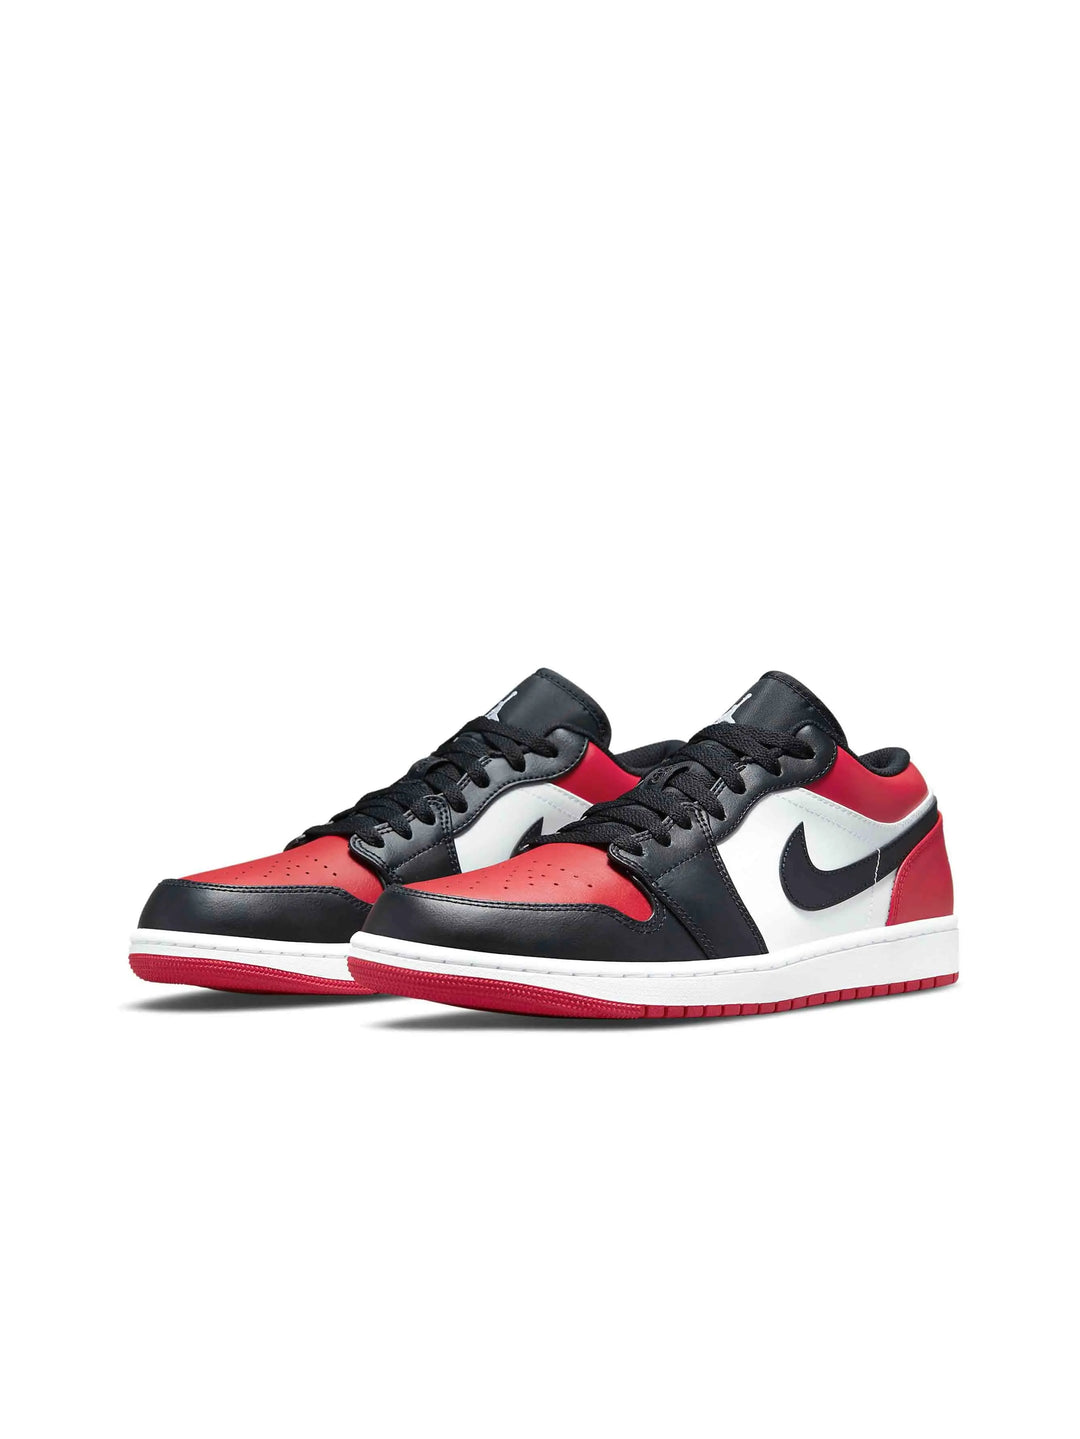 Nike Air Jordan 1 Low Bred Toe - Prior